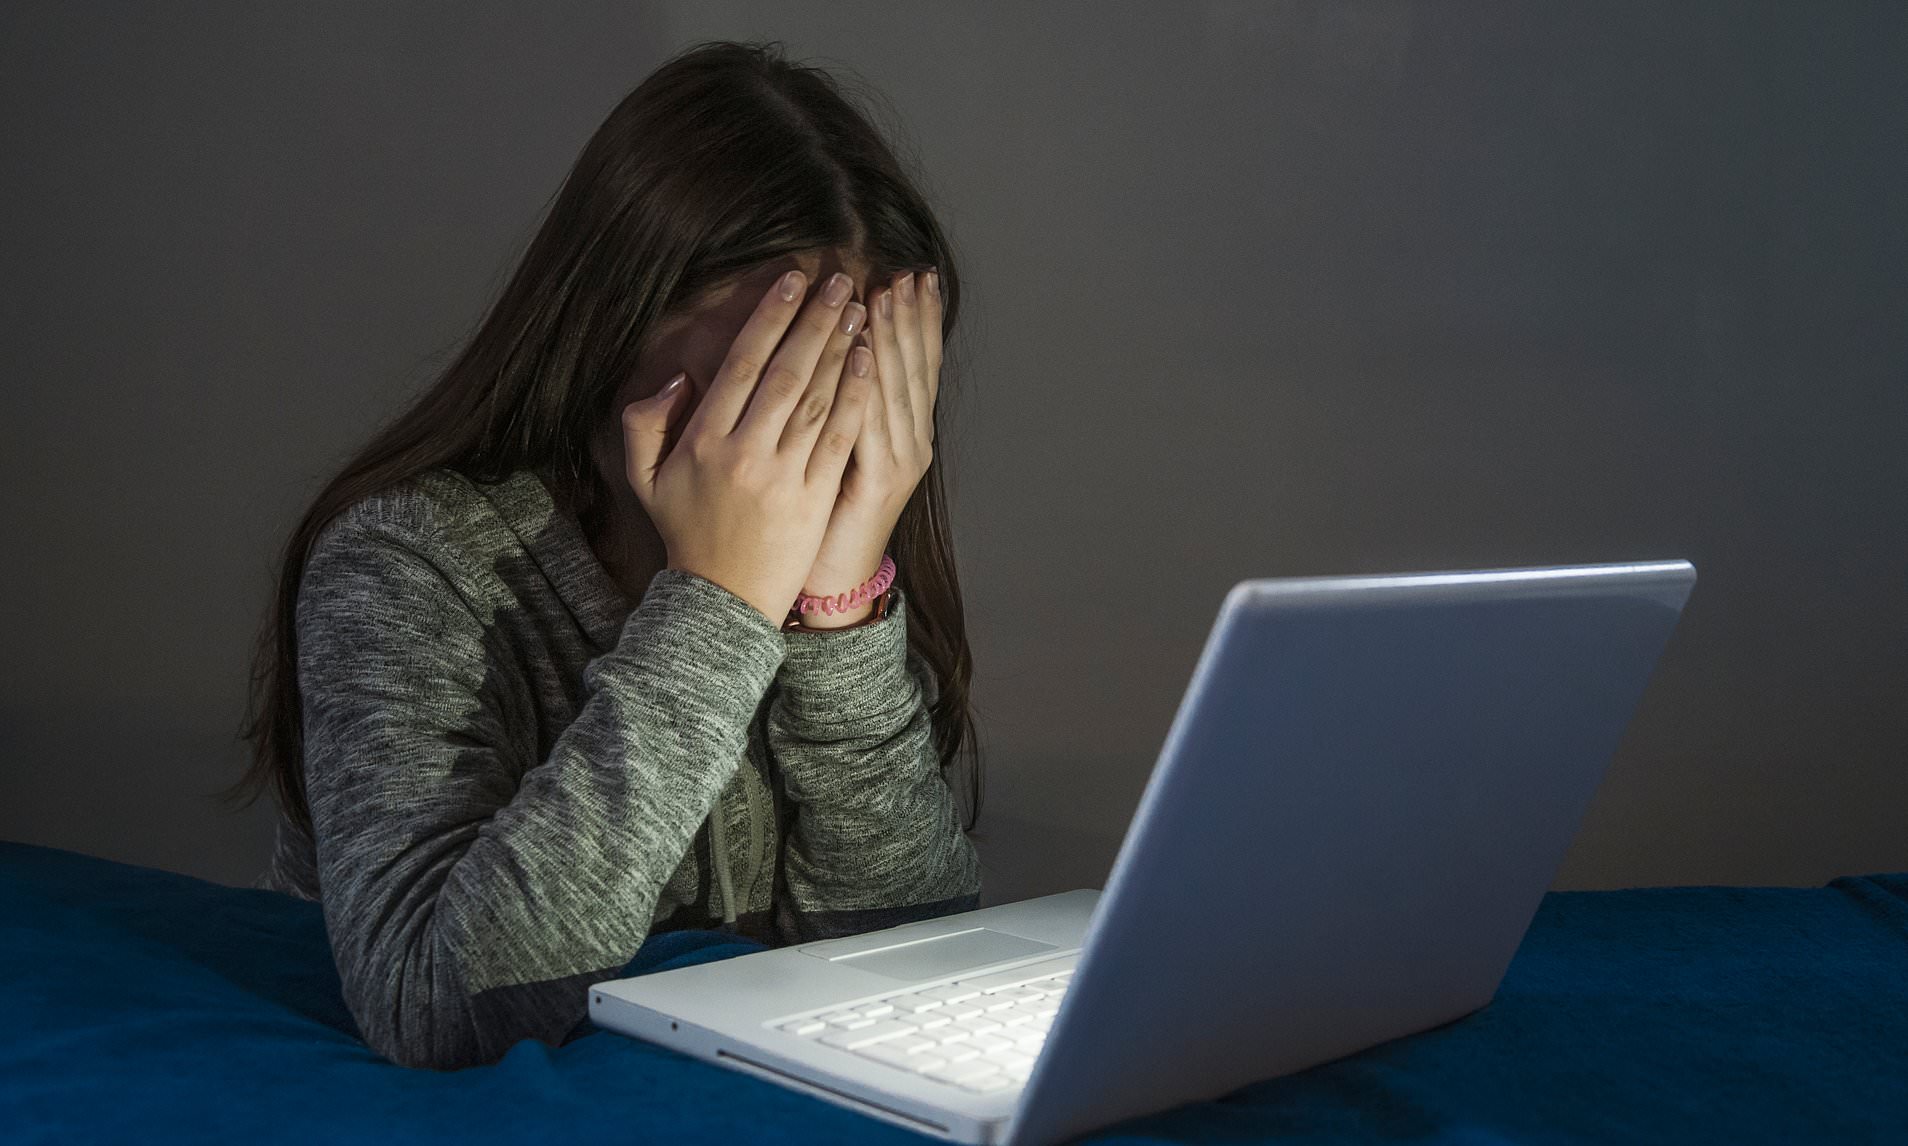 Pesquisa aponta que estudantes de escolas privadas estão mais vulneráveis ao cyberbullying